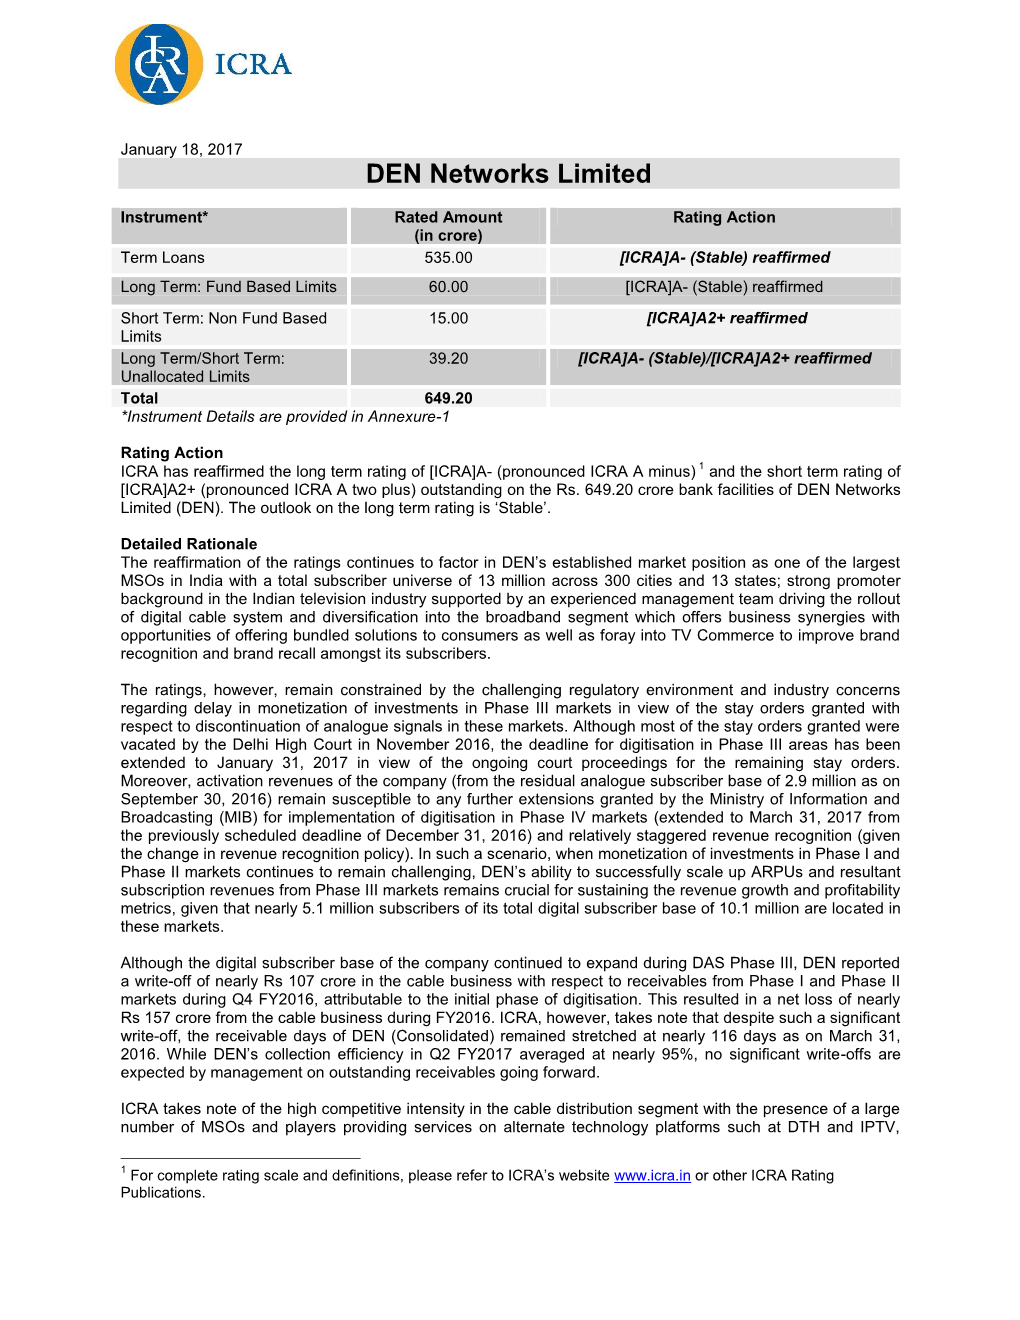 DEN Networks Limited